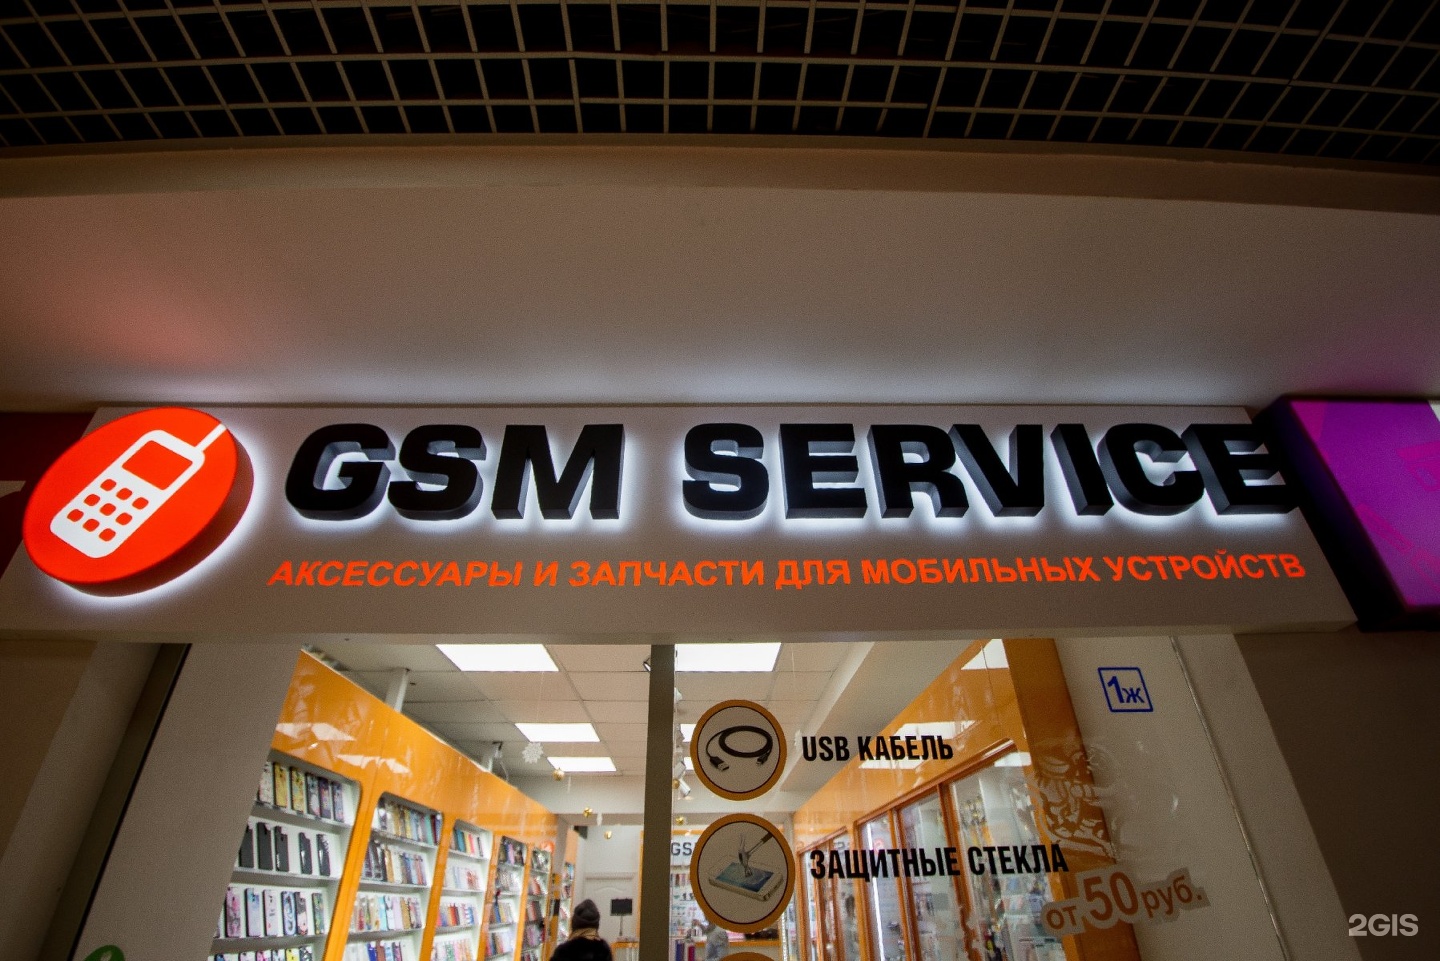 Салоны телефонов омск. GSM service Омск. GSM сервис Омск Орджоникидзе. Магазин GSM Владивосток. GSM service Омск реклама.